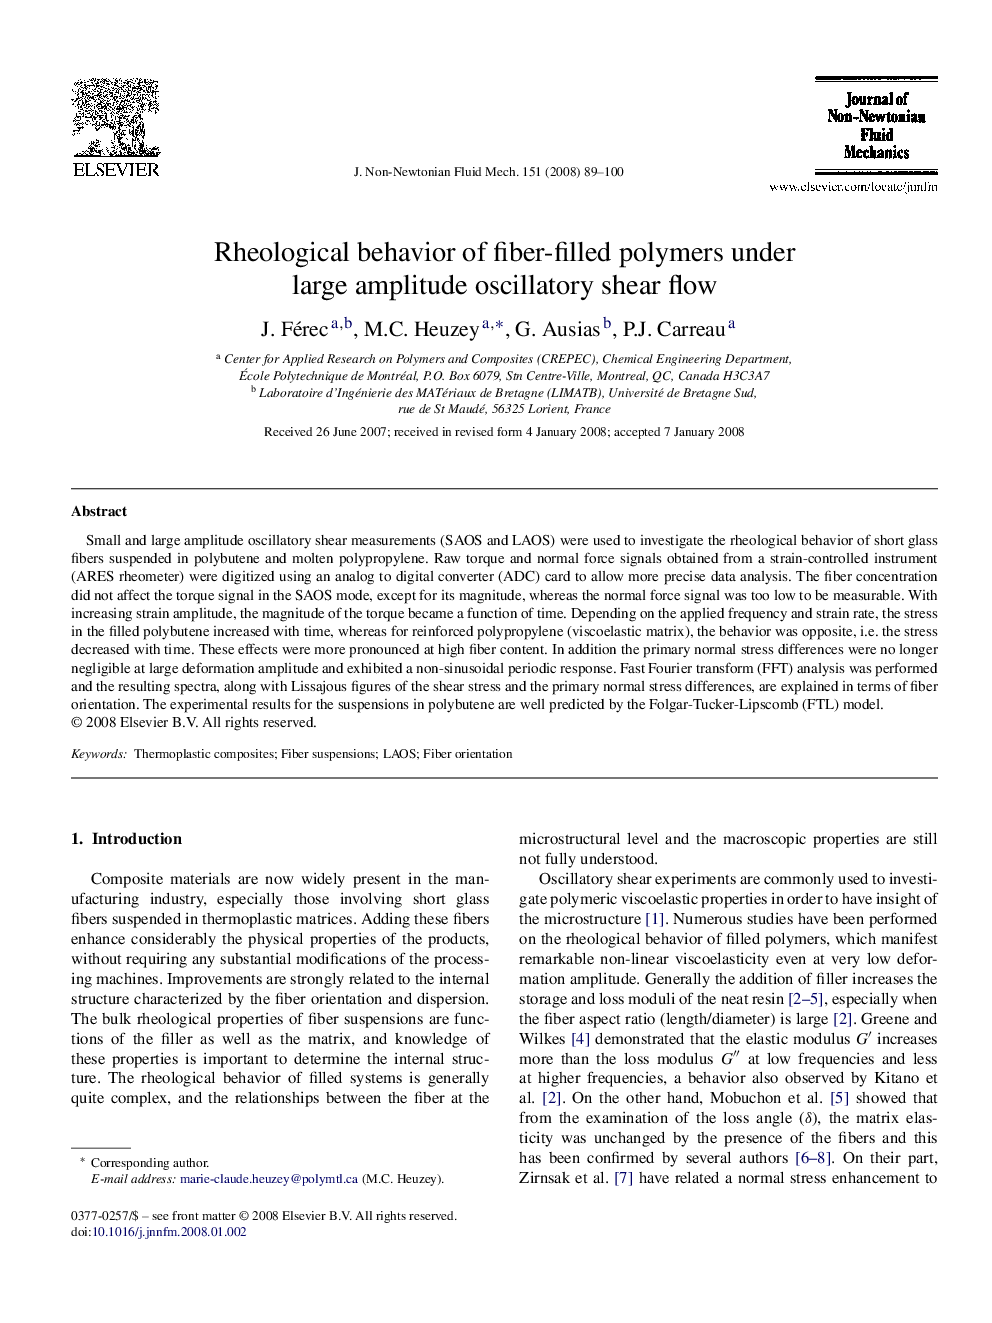 Rheological behavior of fiber-filled polymers under large amplitude oscillatory shear flow